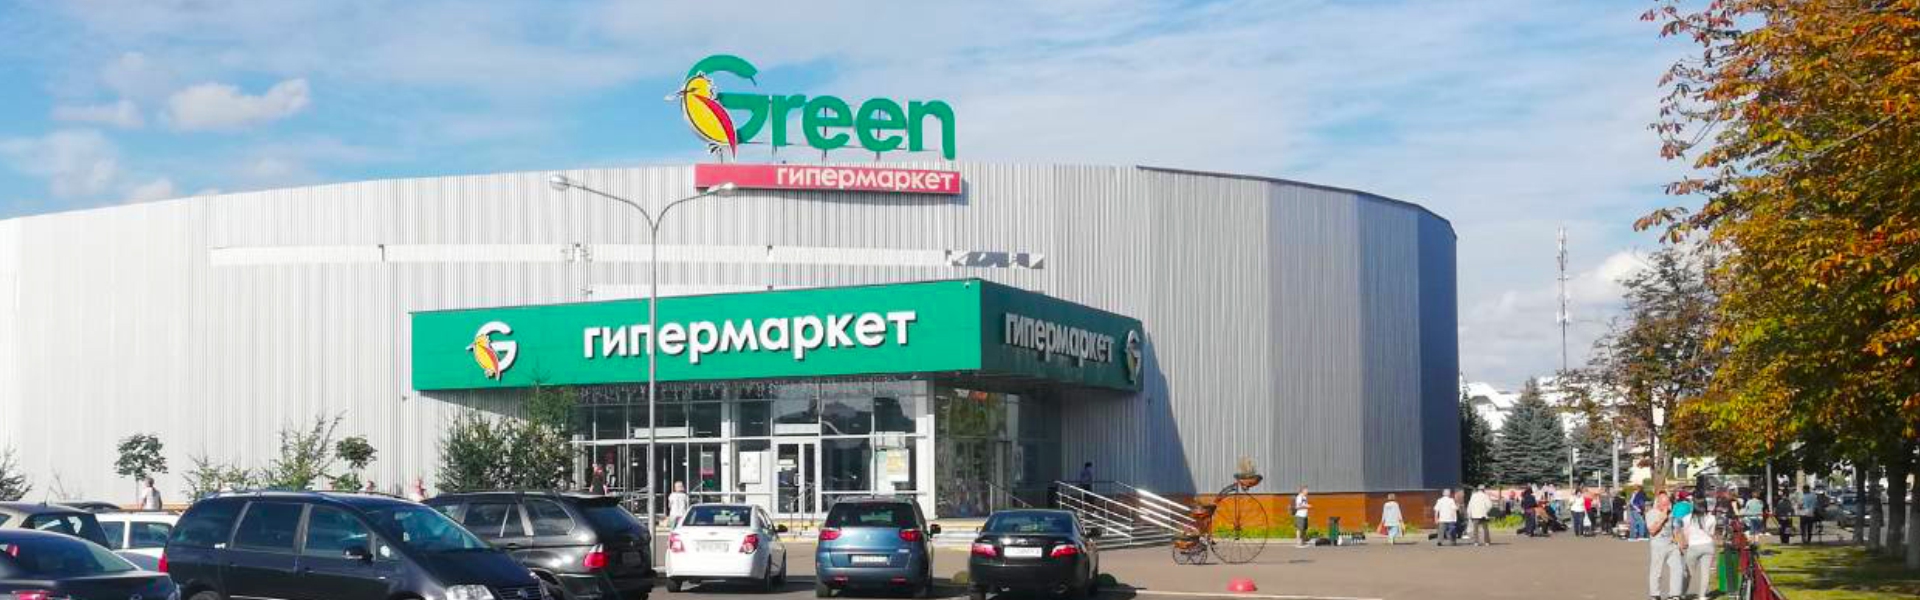 Торговый центр "Green"